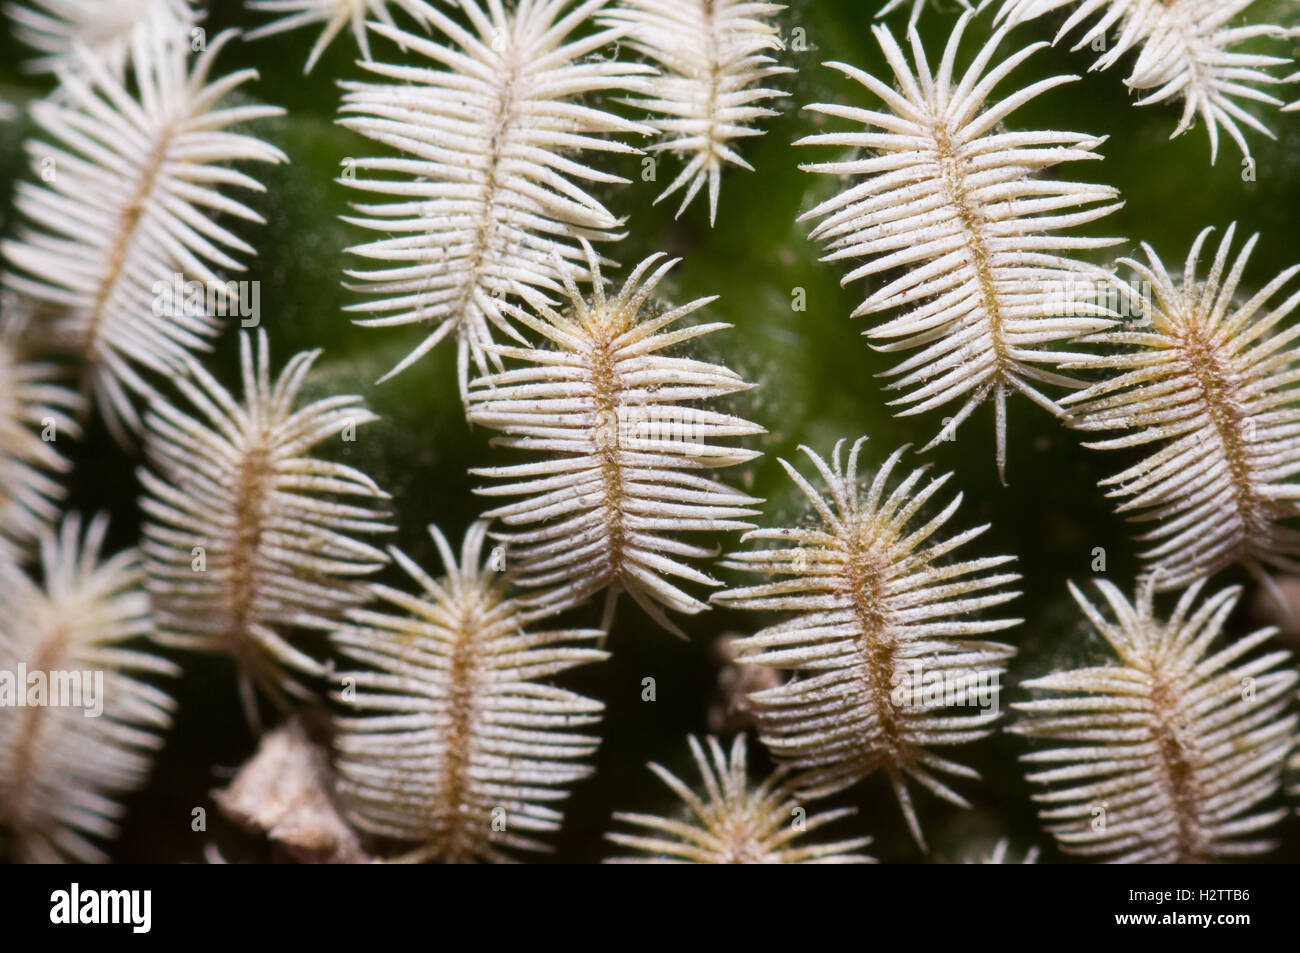 Detalle de las espinas de Mammillaria pectinifera Foto de stock